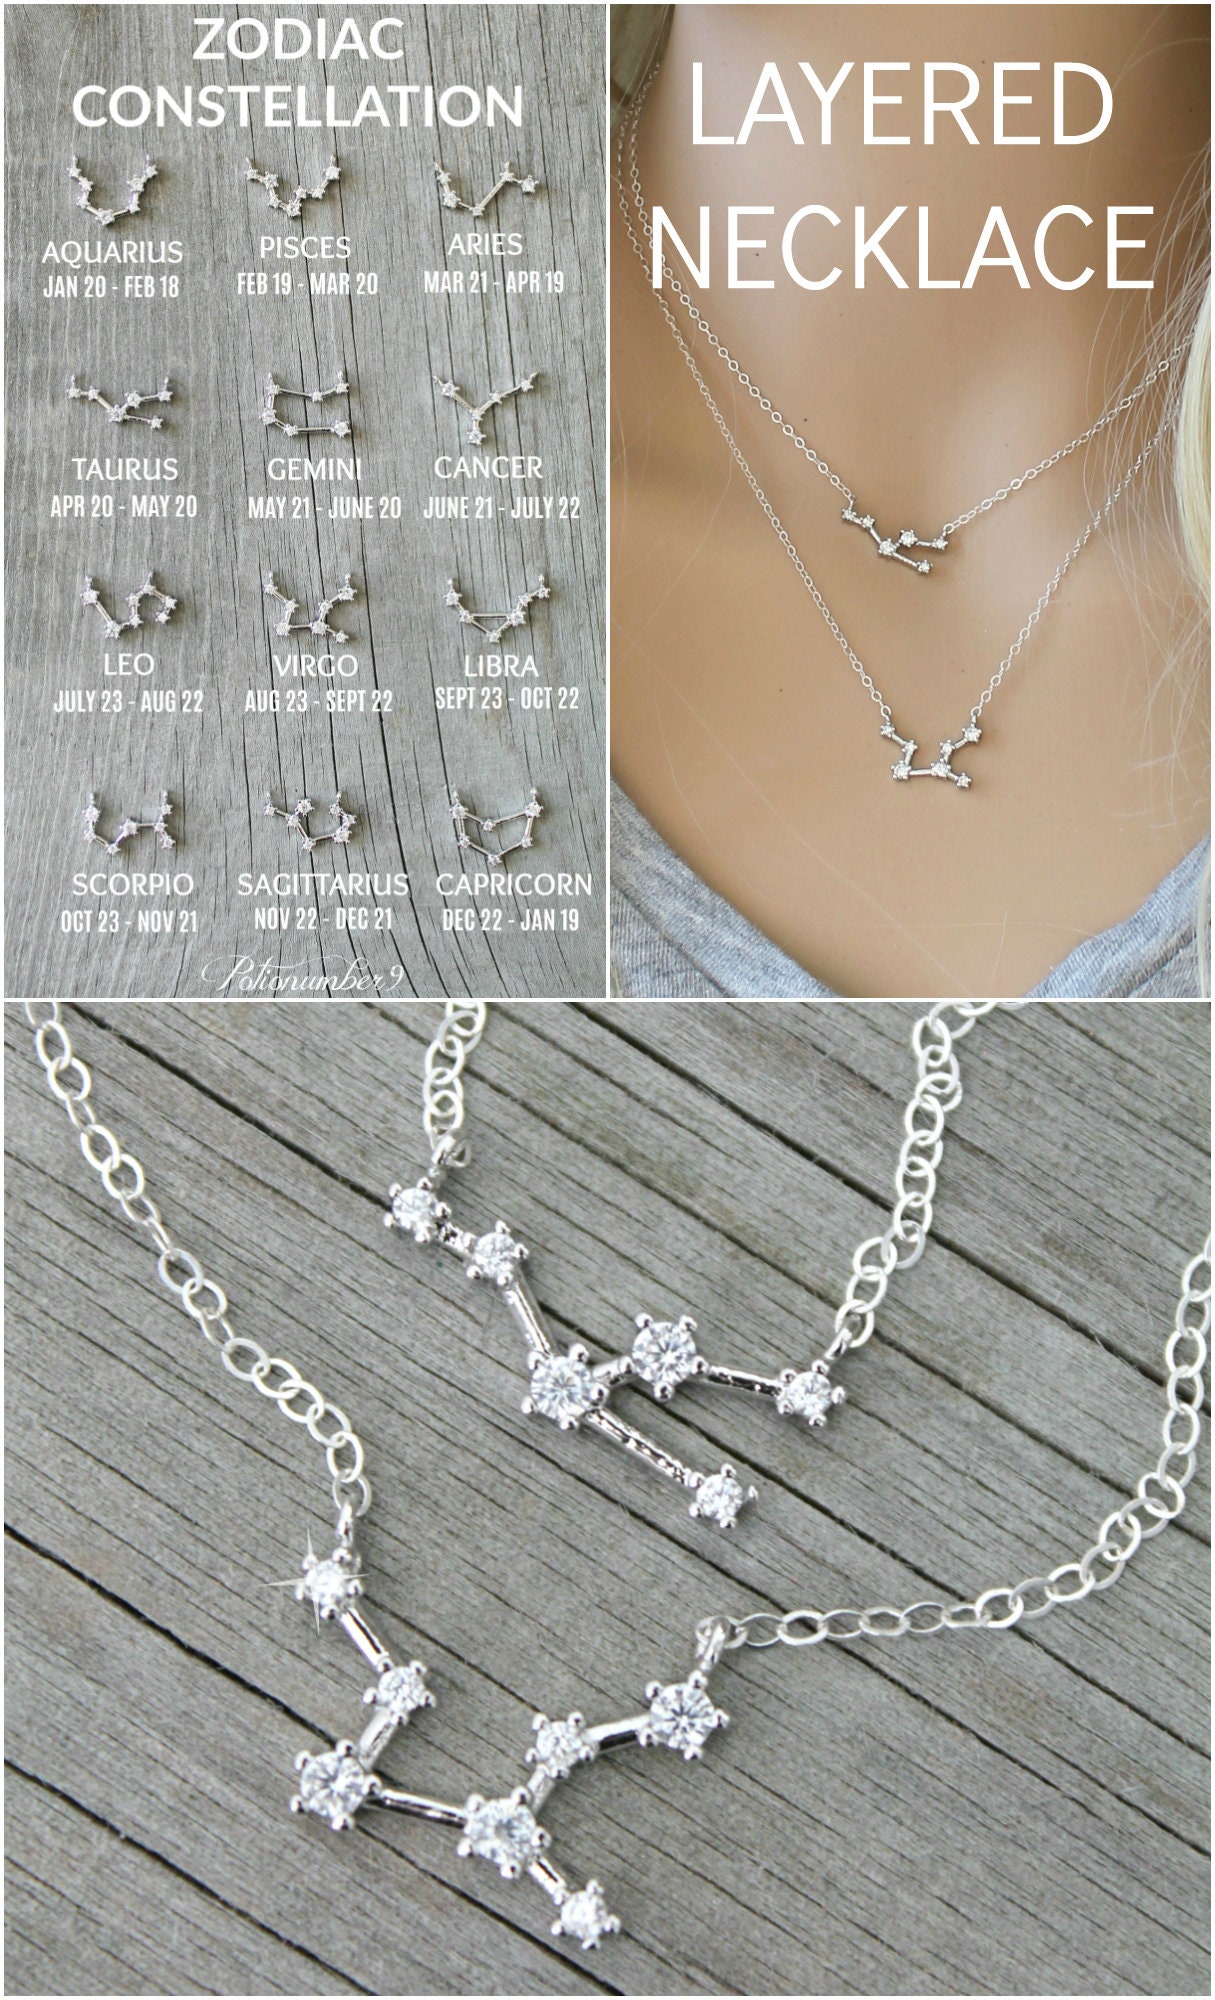 Jella LuxLock Chain Necklace